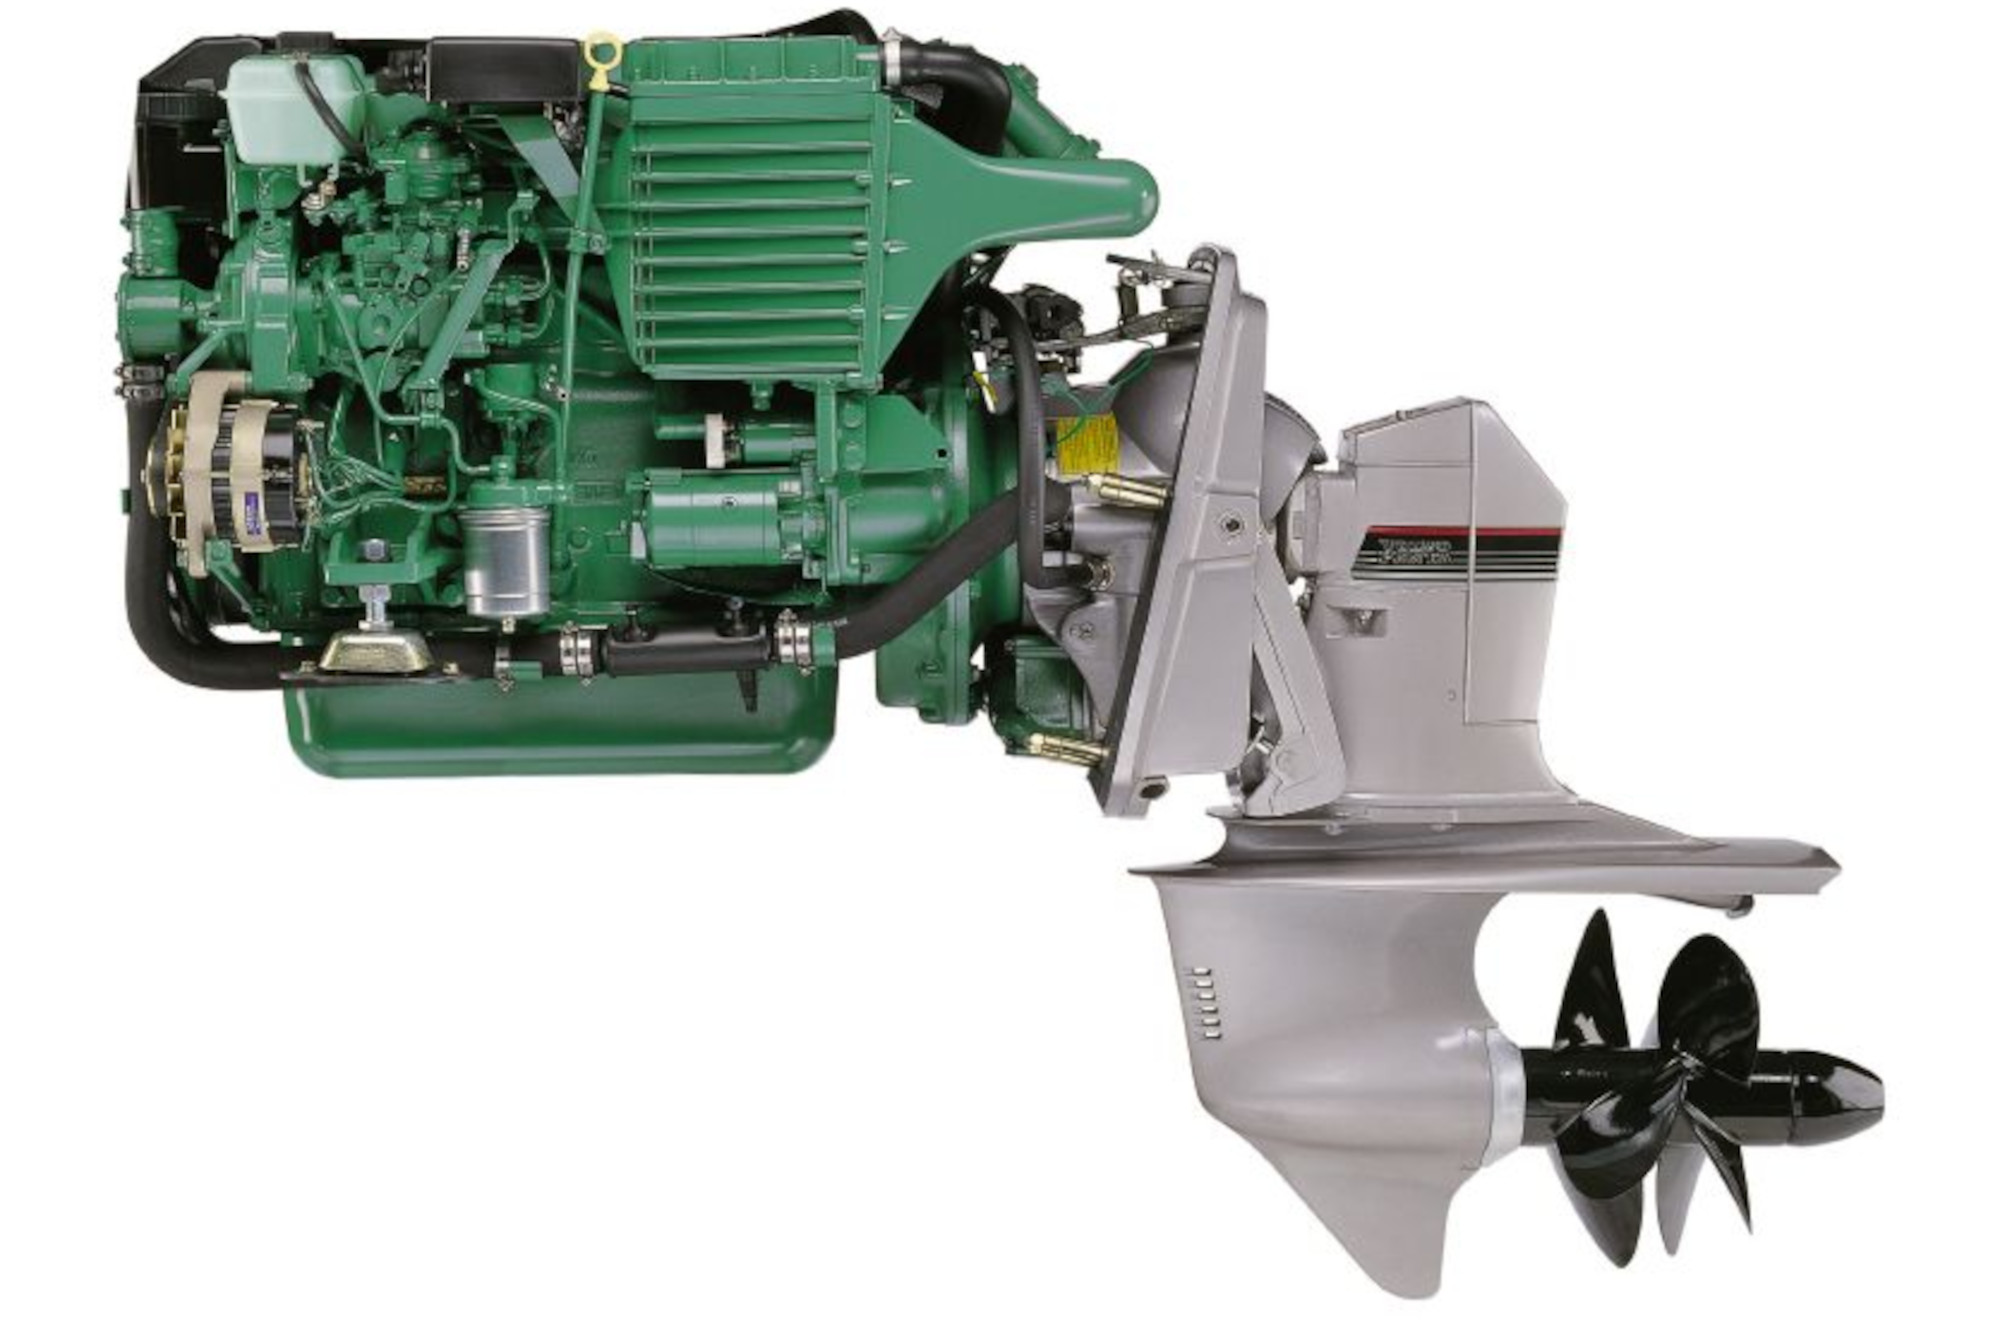 Motor-Spezi - Luftfilter, passt für Volvo Penta Motoren: KAD32, KAD42,  KAD43, KAMD43, KAD44, KAMD300 sowie für TAMD42WJ-A. Ersetzt OEM 876185.